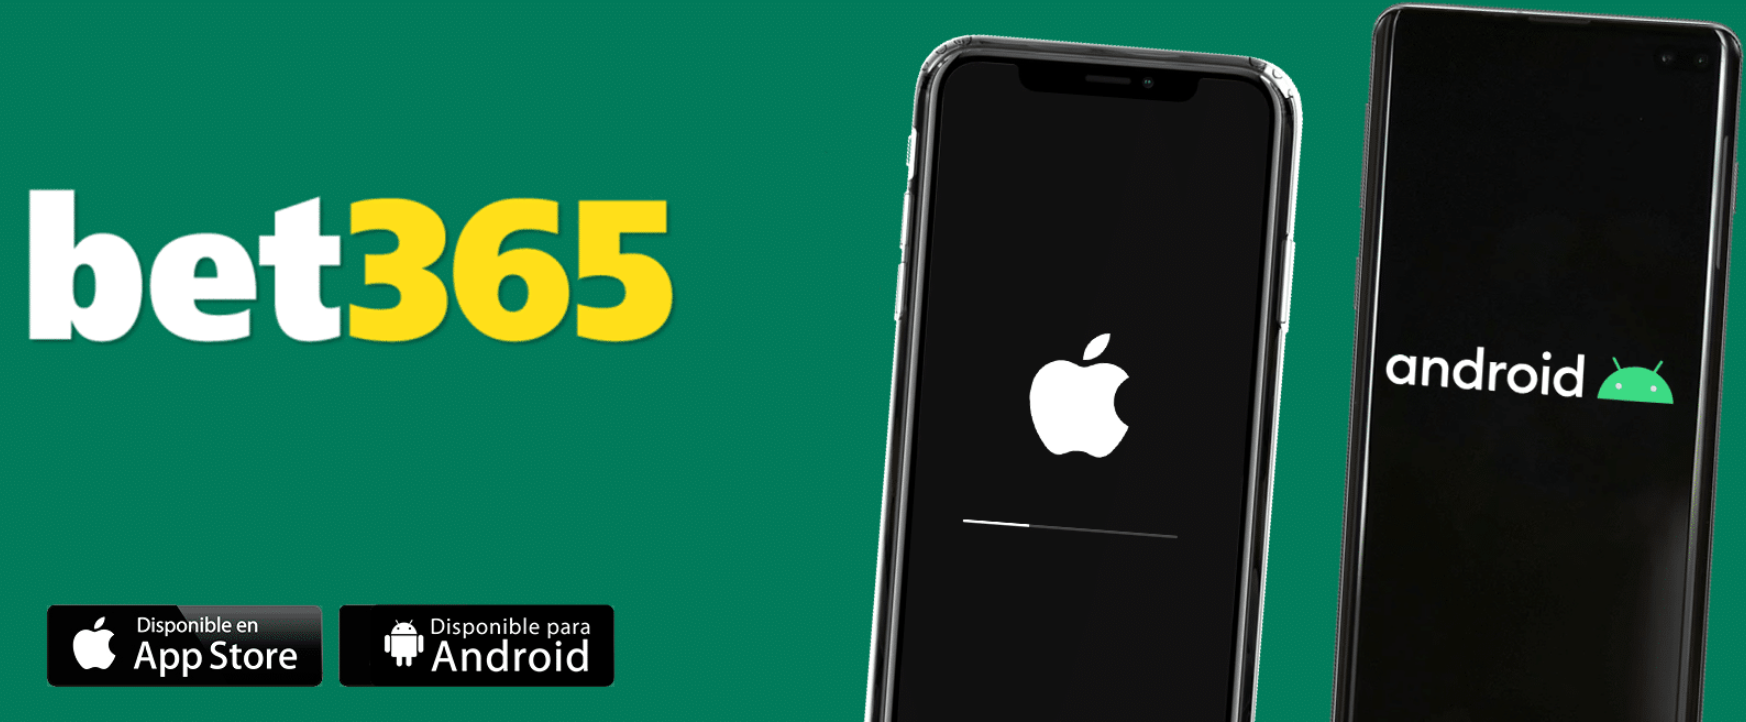 Bet365 app para iPhone